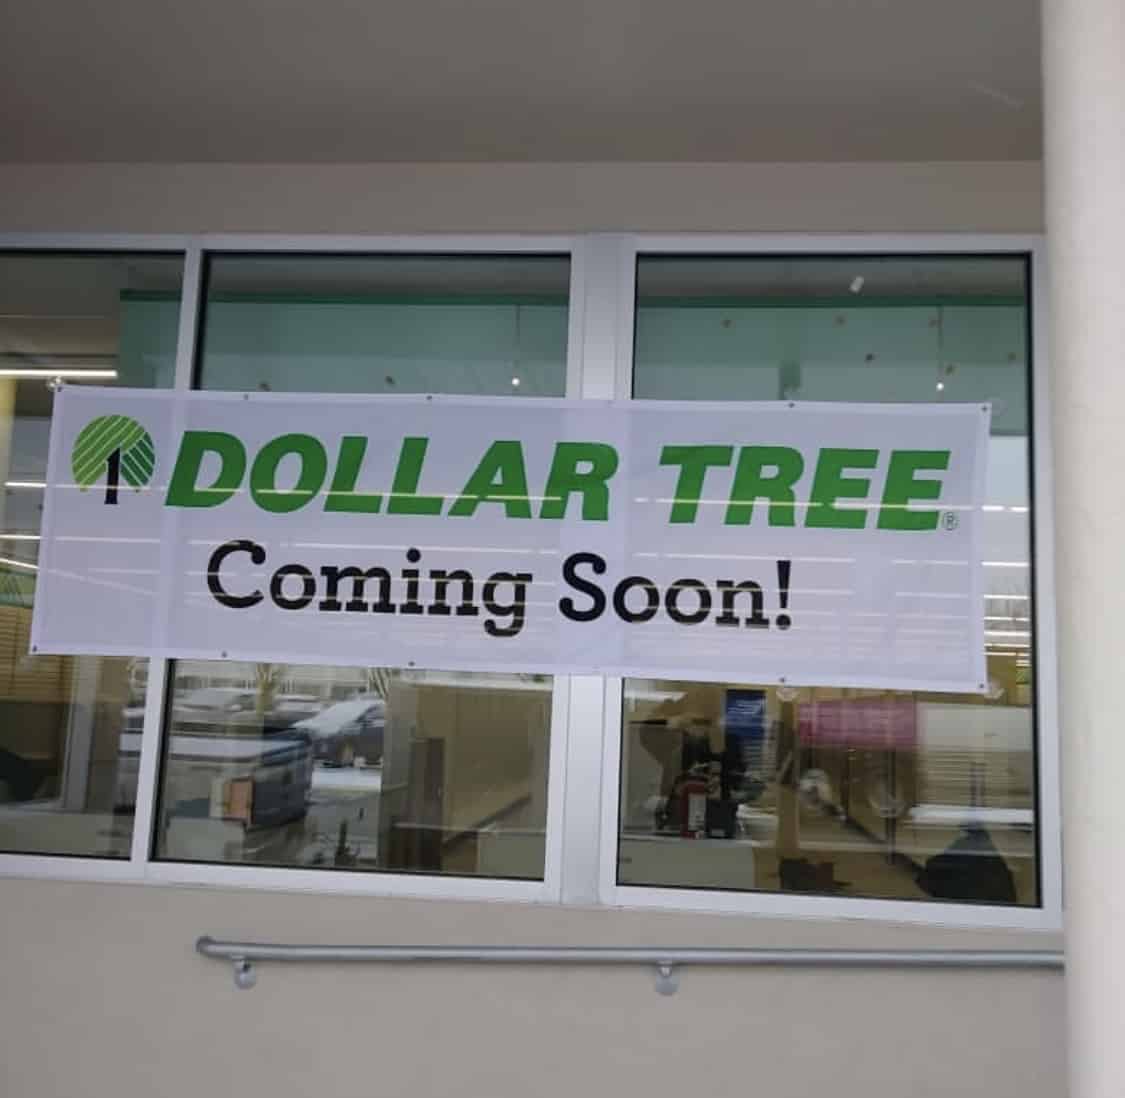 Wildwood's Dollar Tree Update